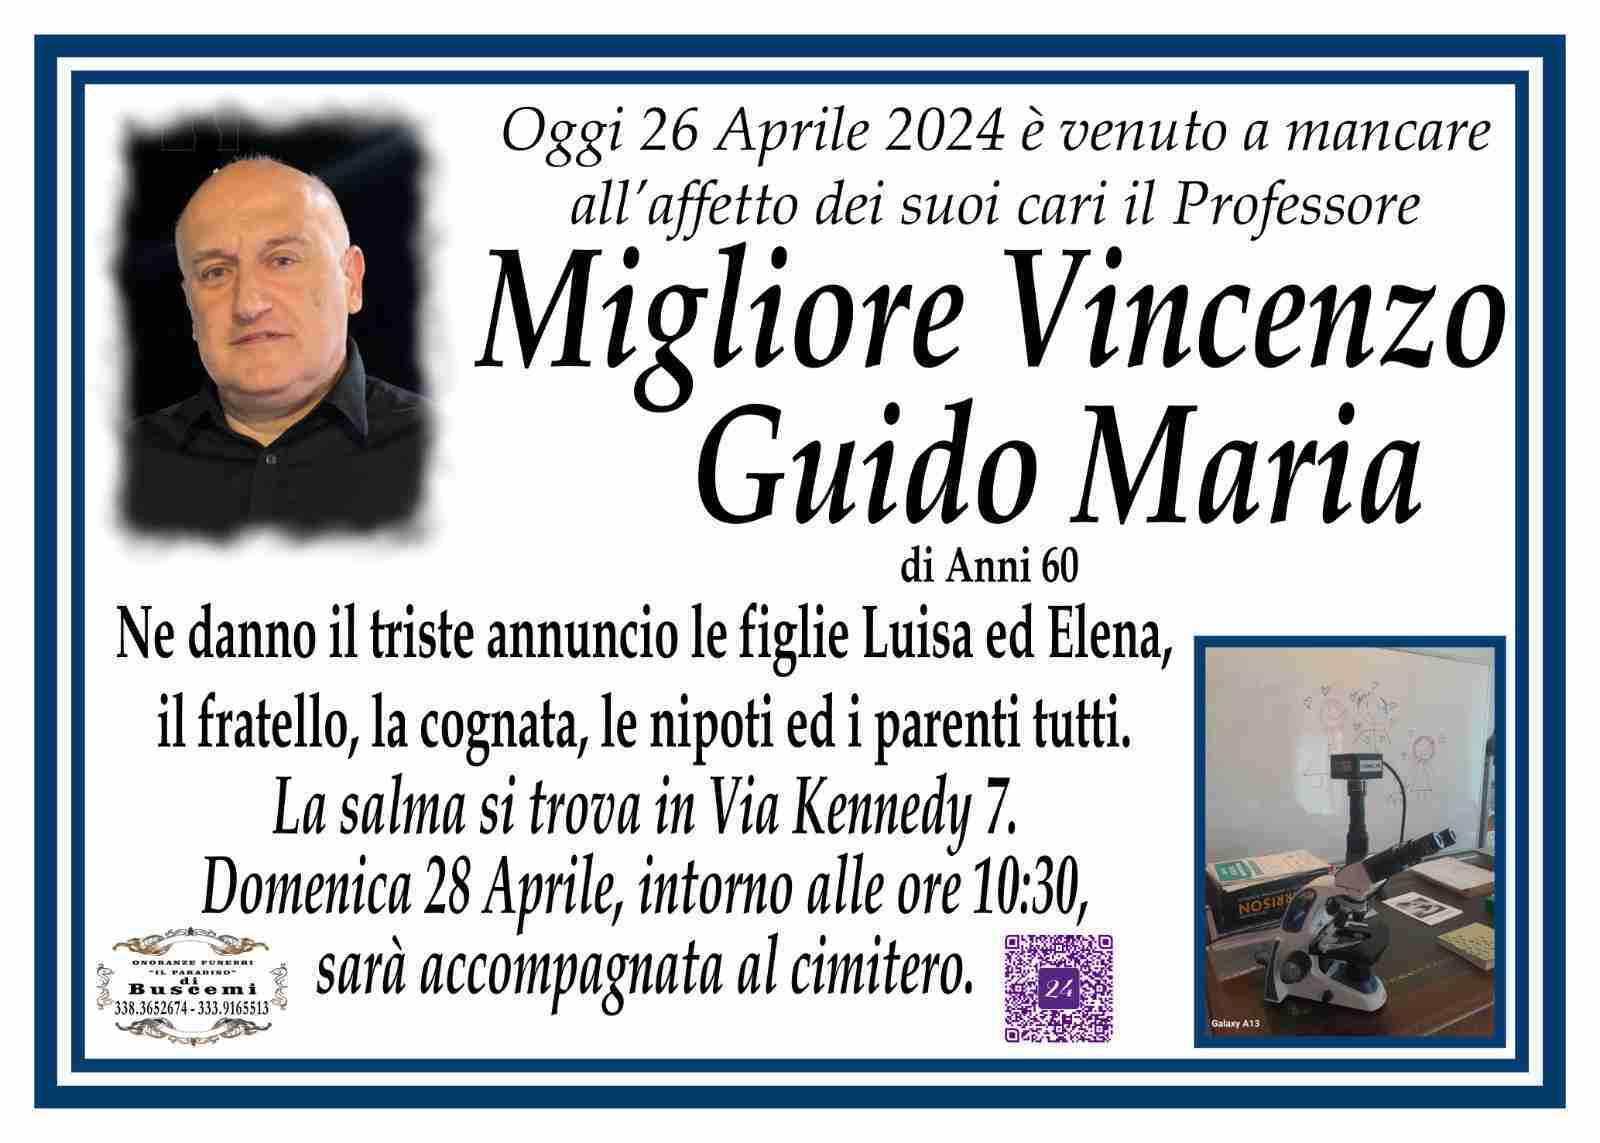 Vincenzo Guido Maria Migliore